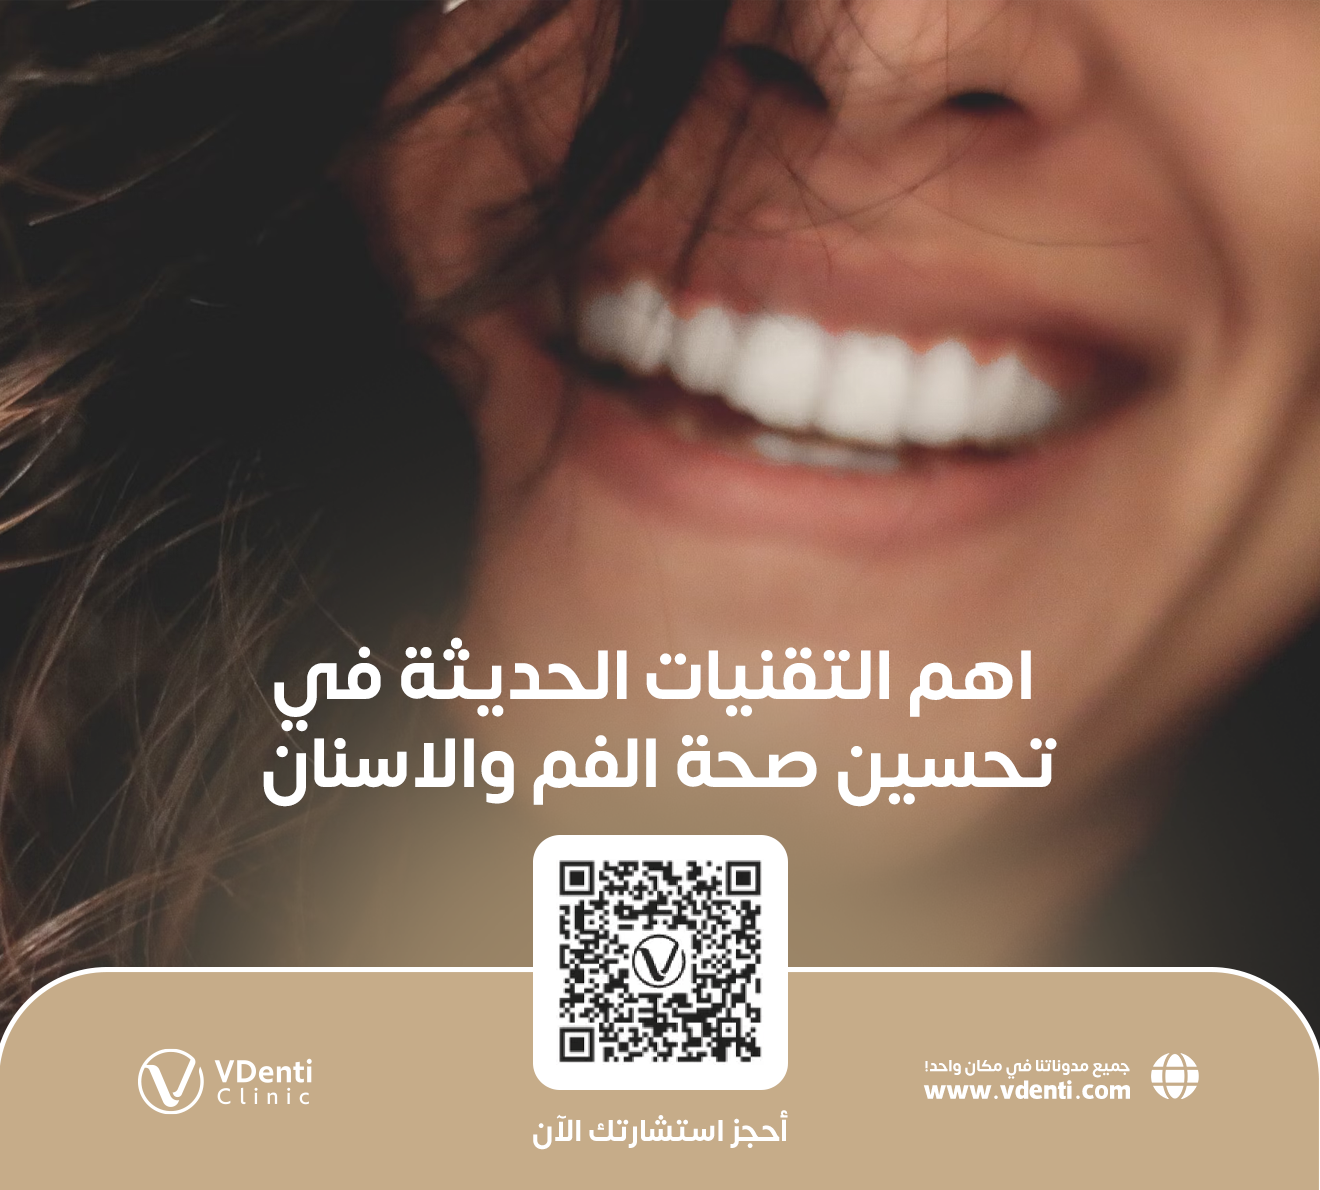 لإبتسامة جميلة إليك اهم التقنيات الحديثة في تحسين صحة الفم والاسنان